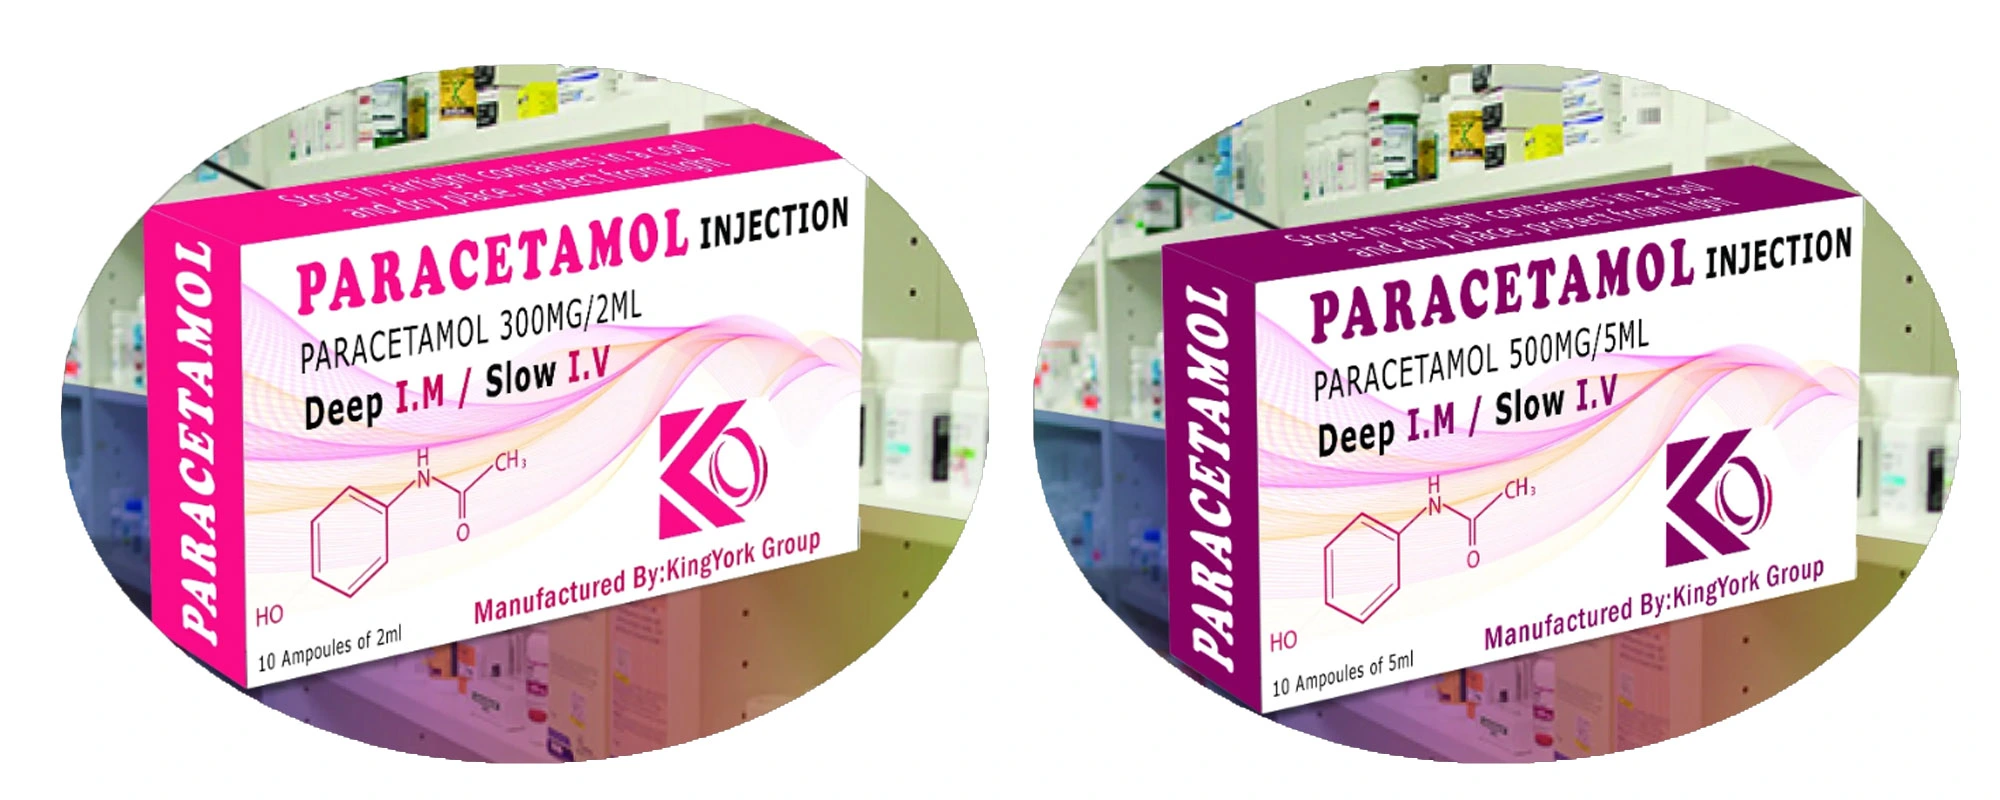 'Paracetamol injection 300mg', 'Paracetamol injection', 'Paracetamol'